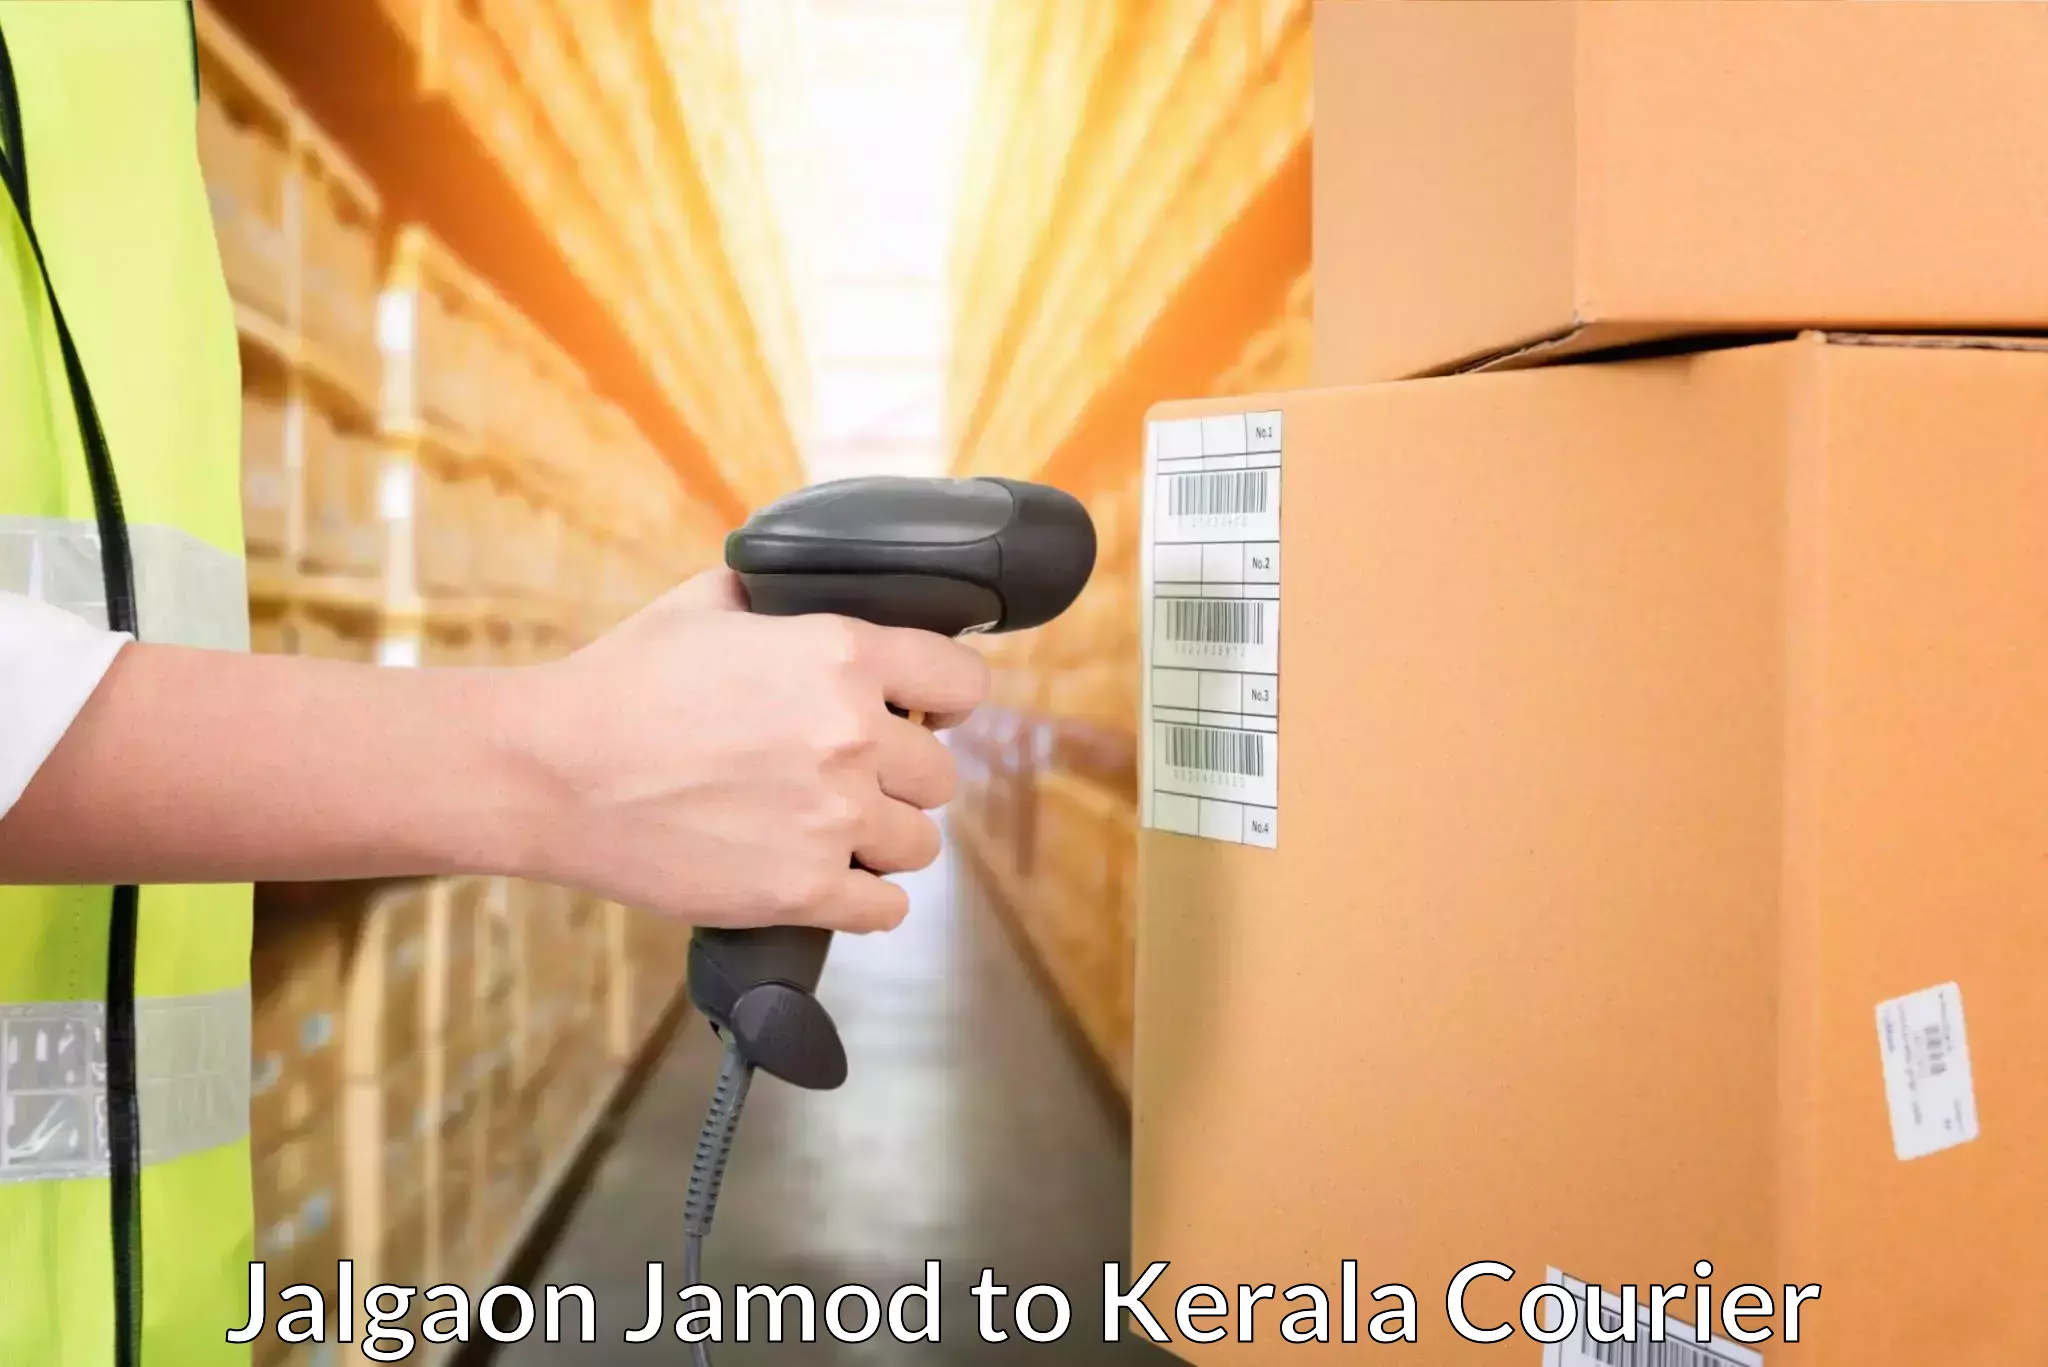 Shipping and handling Jalgaon Jamod to Pandikkad